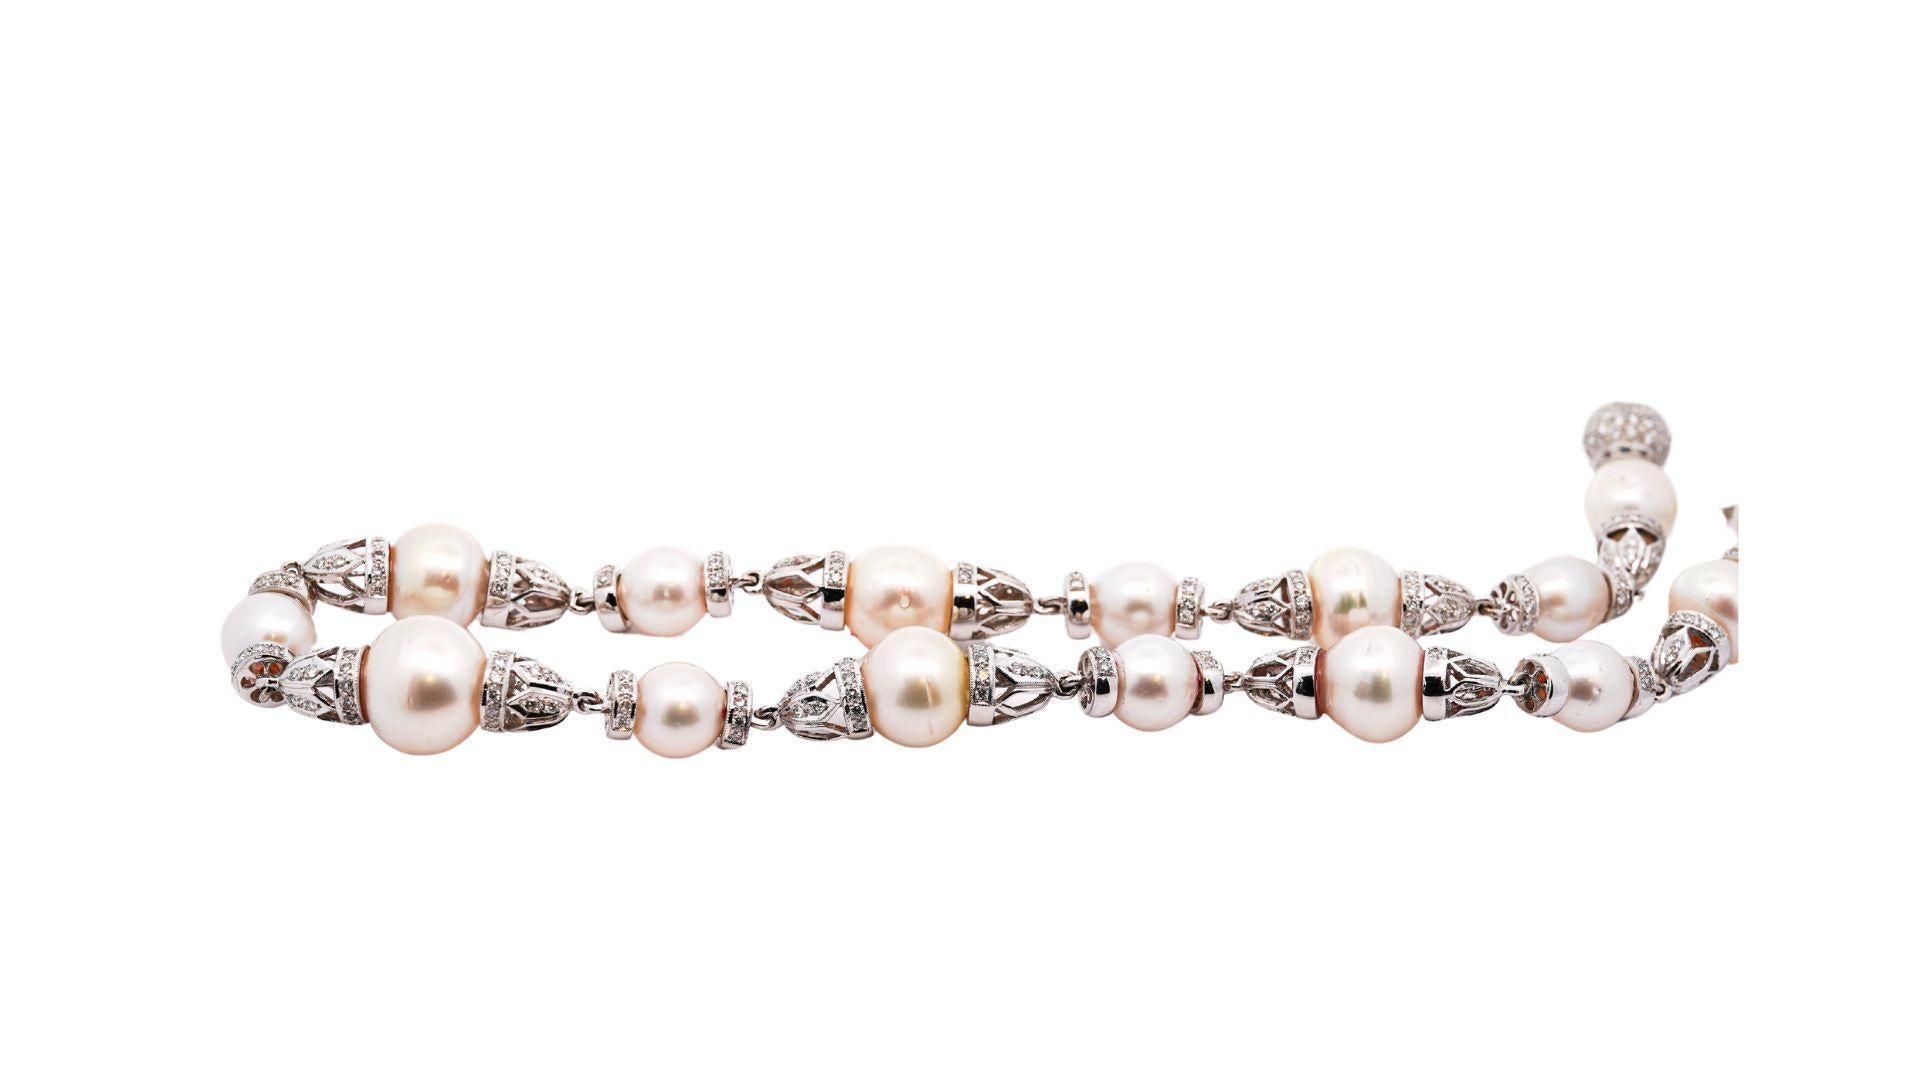 Südsee-Zuchtperlen und Diamant-Halskette aus 18 Karat Weißgold. Mit einem diamantbesetzten Kastenverschluss und kegelförmigen Gliedern, die die Perlen verbinden. Die Perlen weisen mäßige Fehler auf, haben einen ausgezeichneten Glanz und eine gute